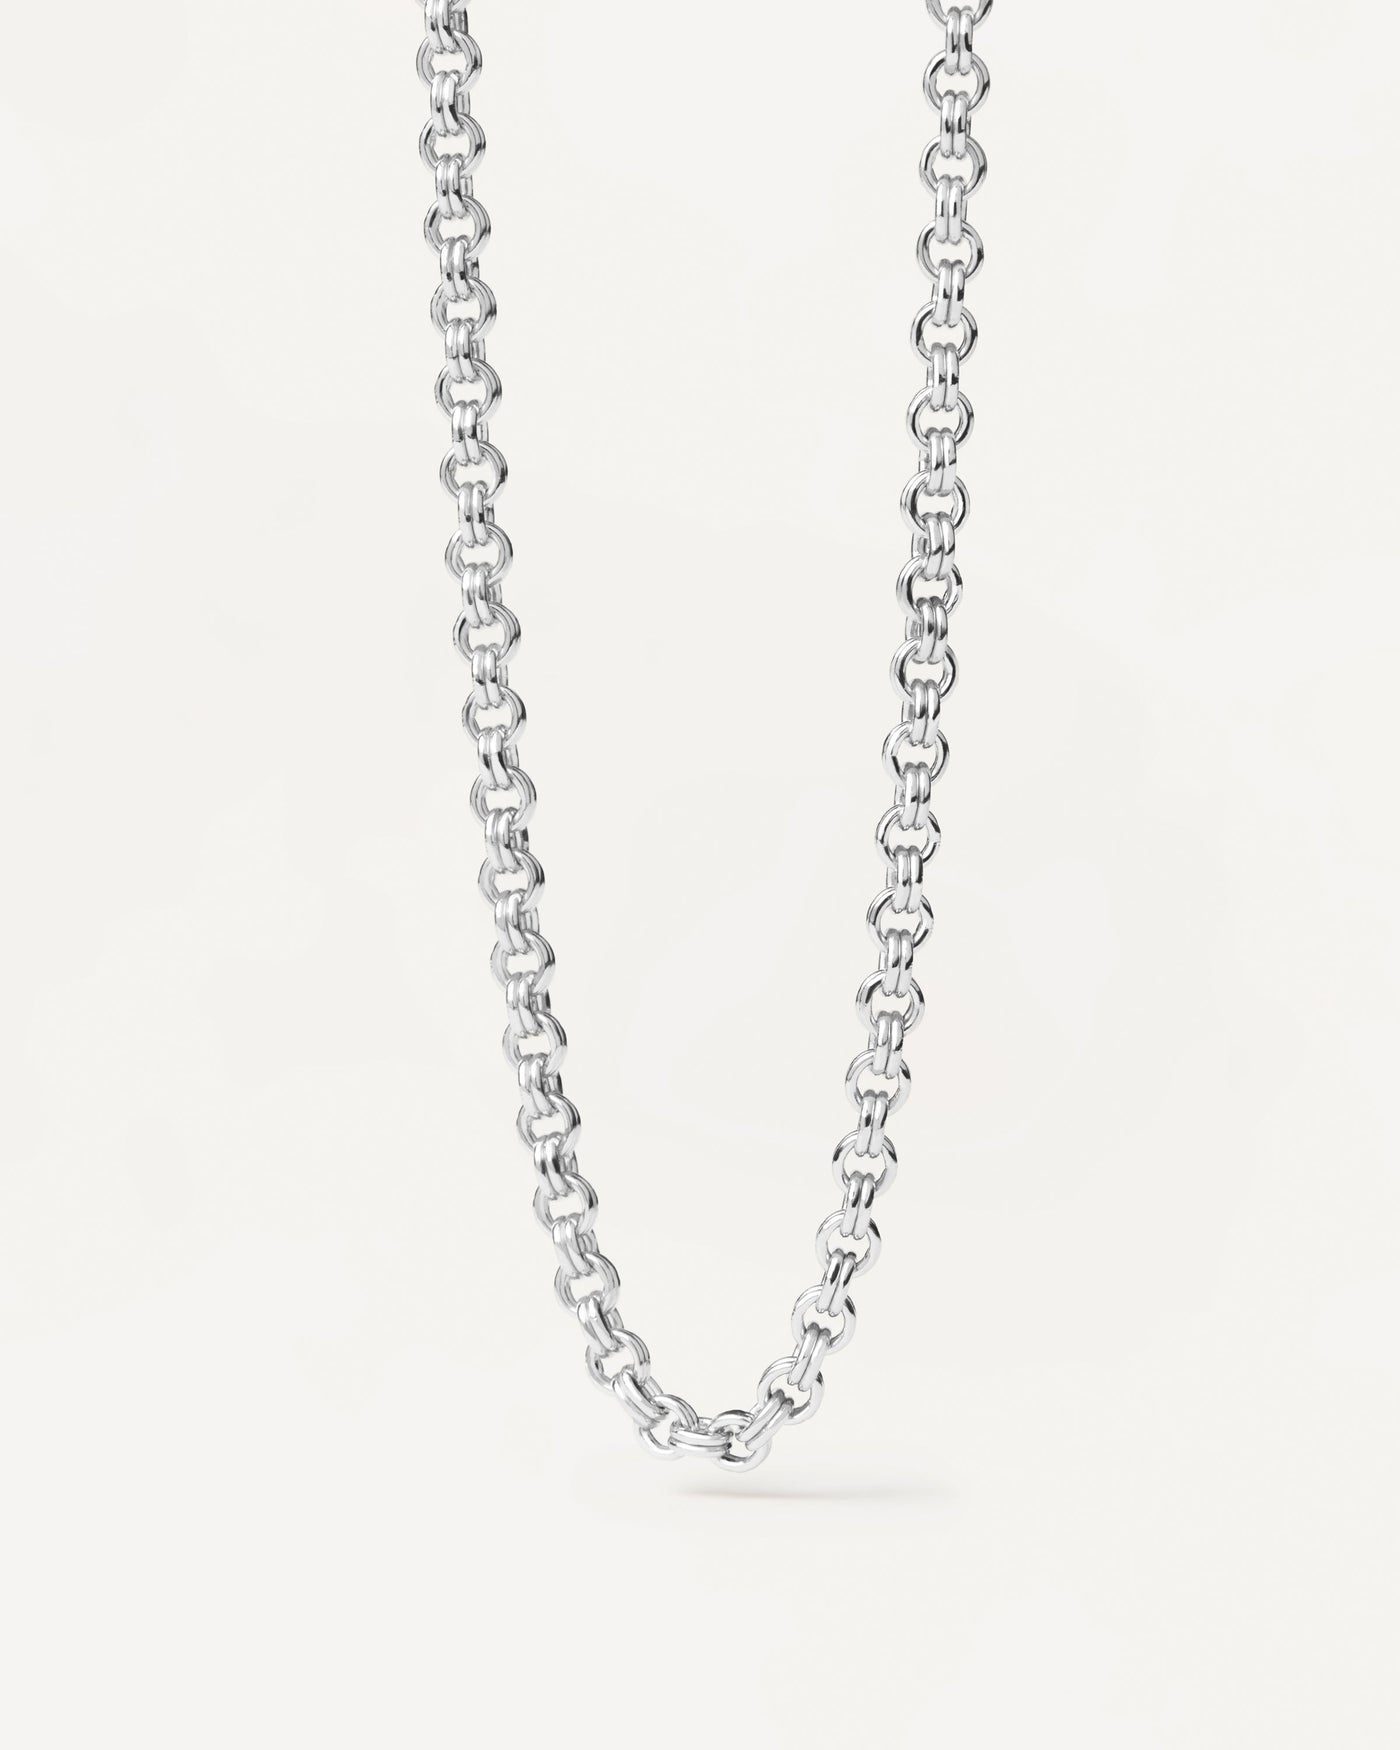 Neo Silberhalskette. 925 Silberketten -Halskette mit Doppelkabelgliedern. Erhalten Sie die neuesten Produkte von PDPAOLA. Geben Sie Ihre Bestellung sicher auf und erhalten Sie diesen Bestseller.